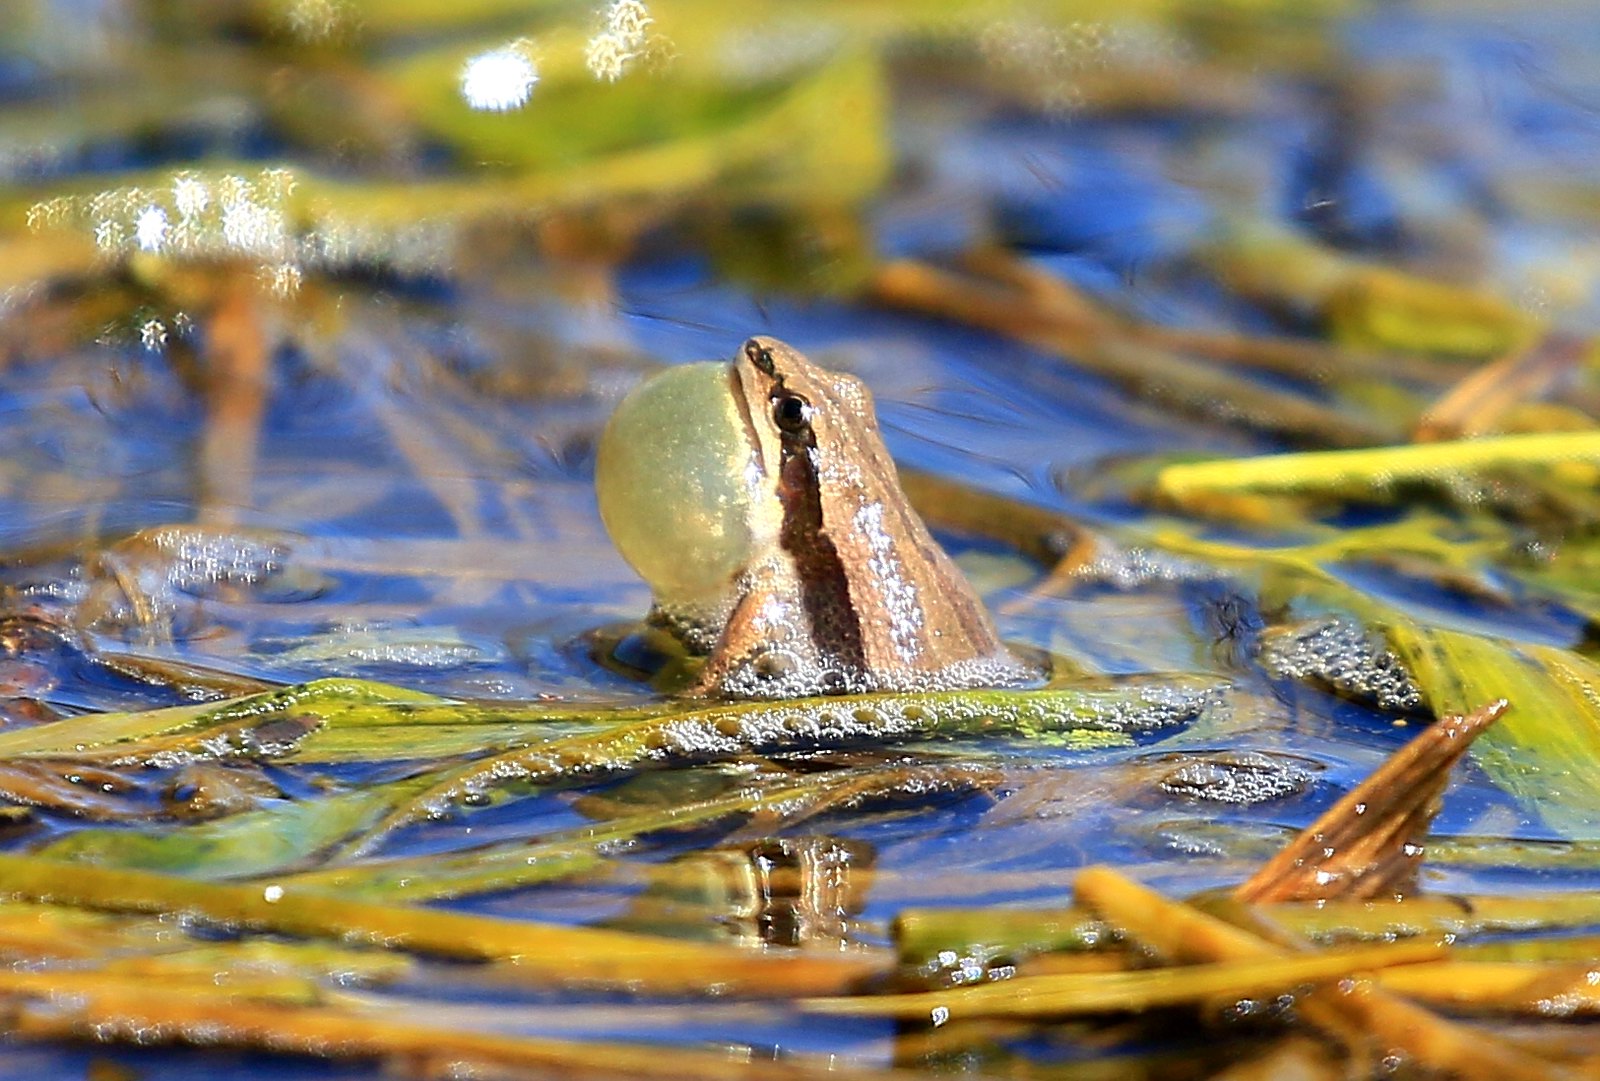 Boreal chorus frog